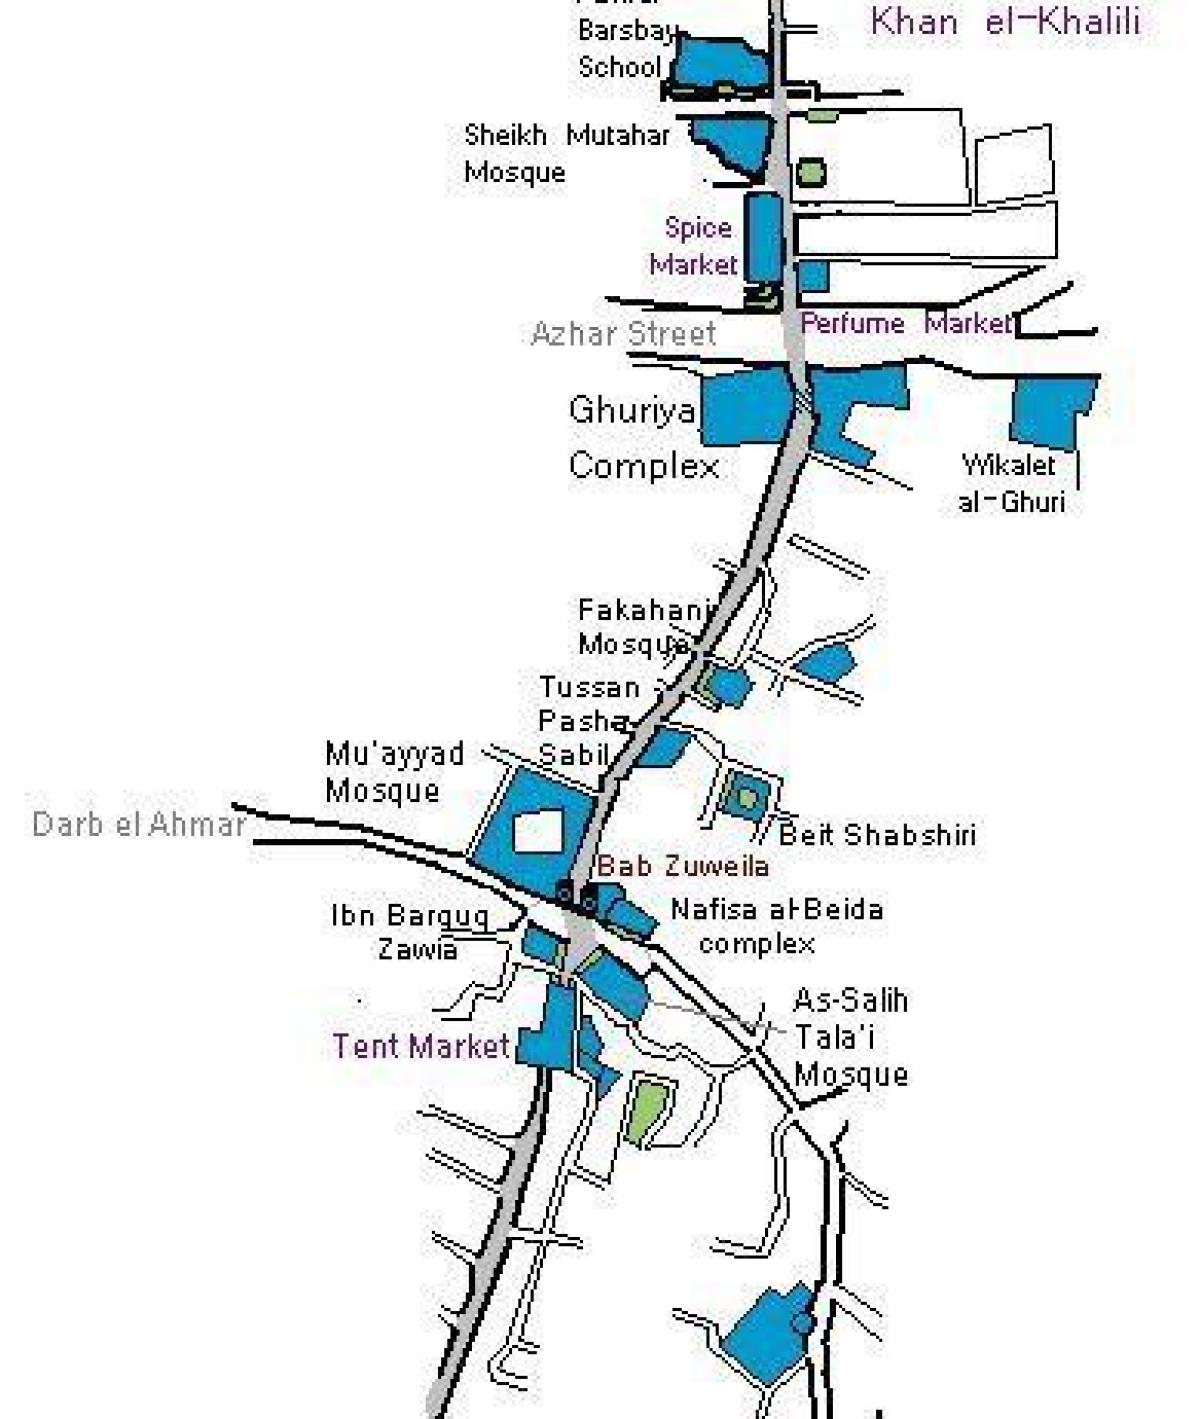 de khan el khalili bazaar kaart